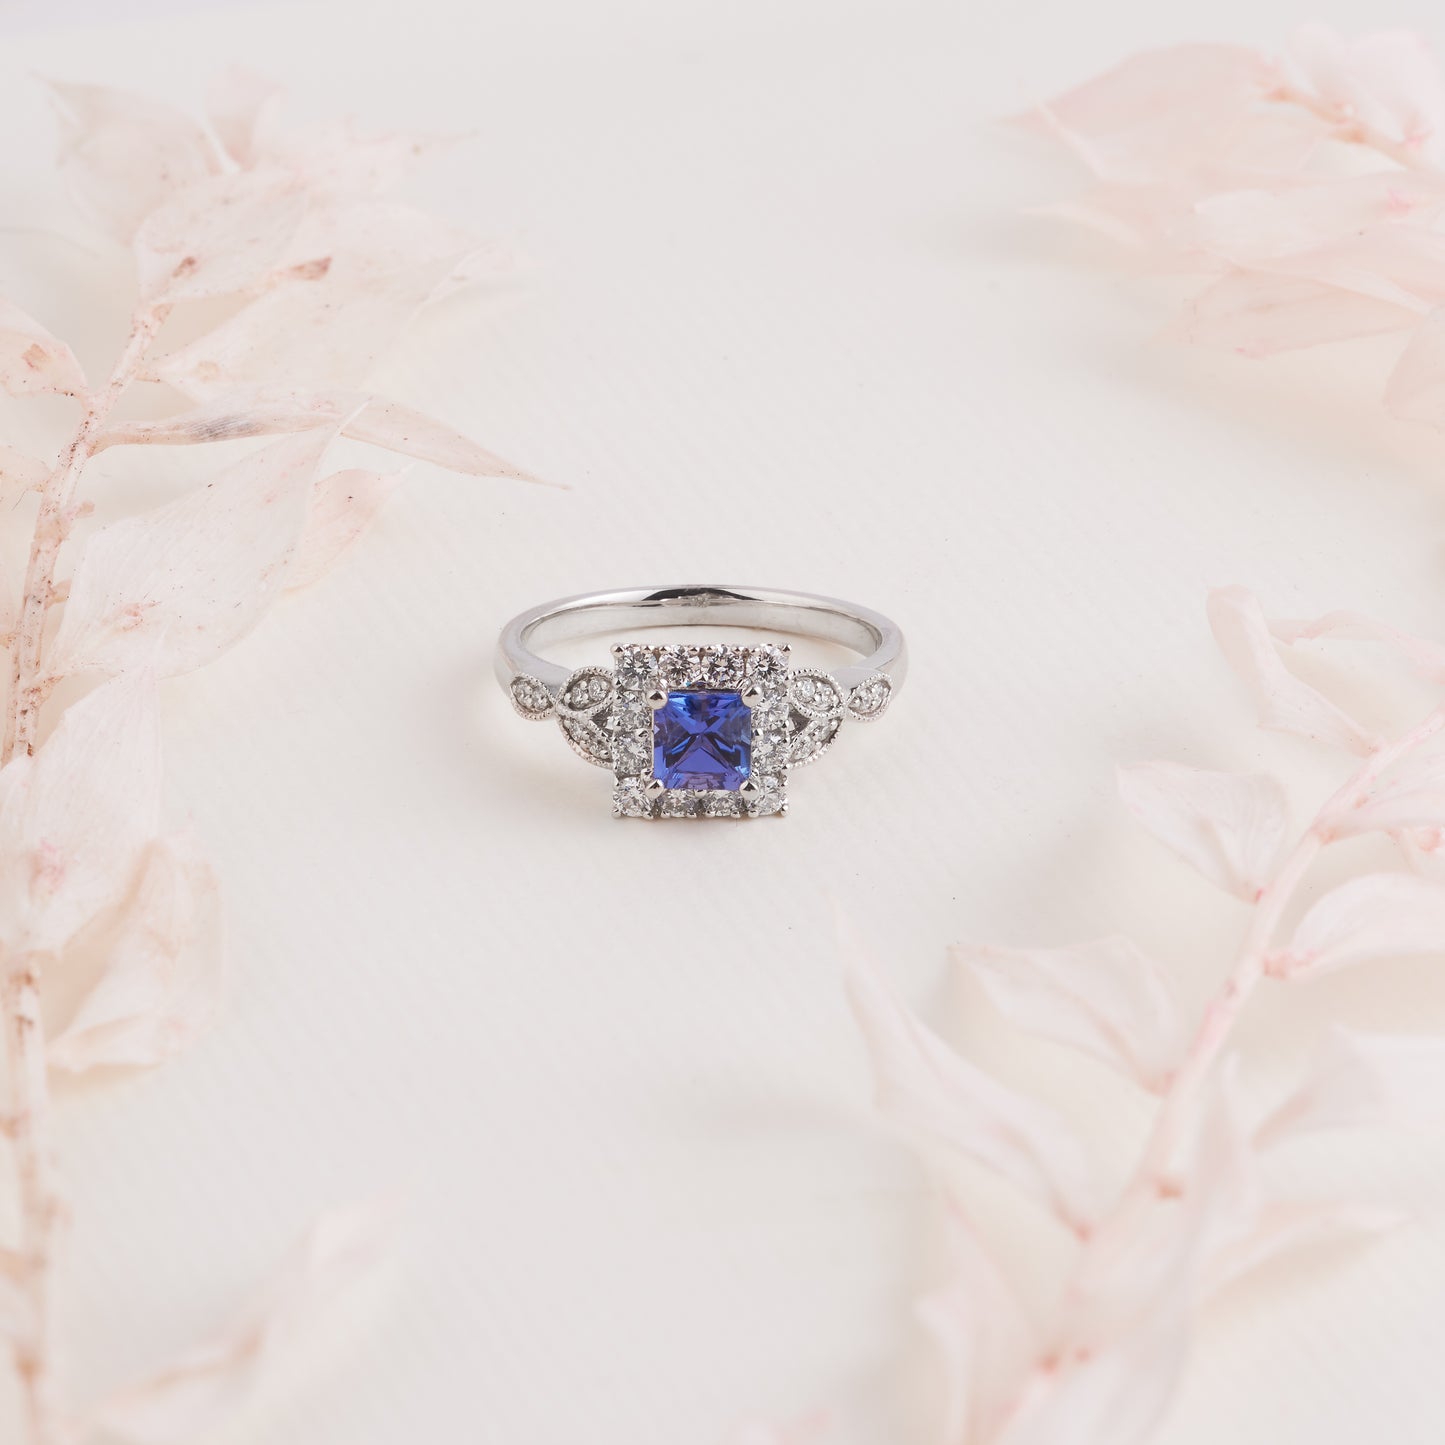 18K White Gold Princess Cut Tanzanite Diamond Halo Vintage Inspired Ring 0.5tdw